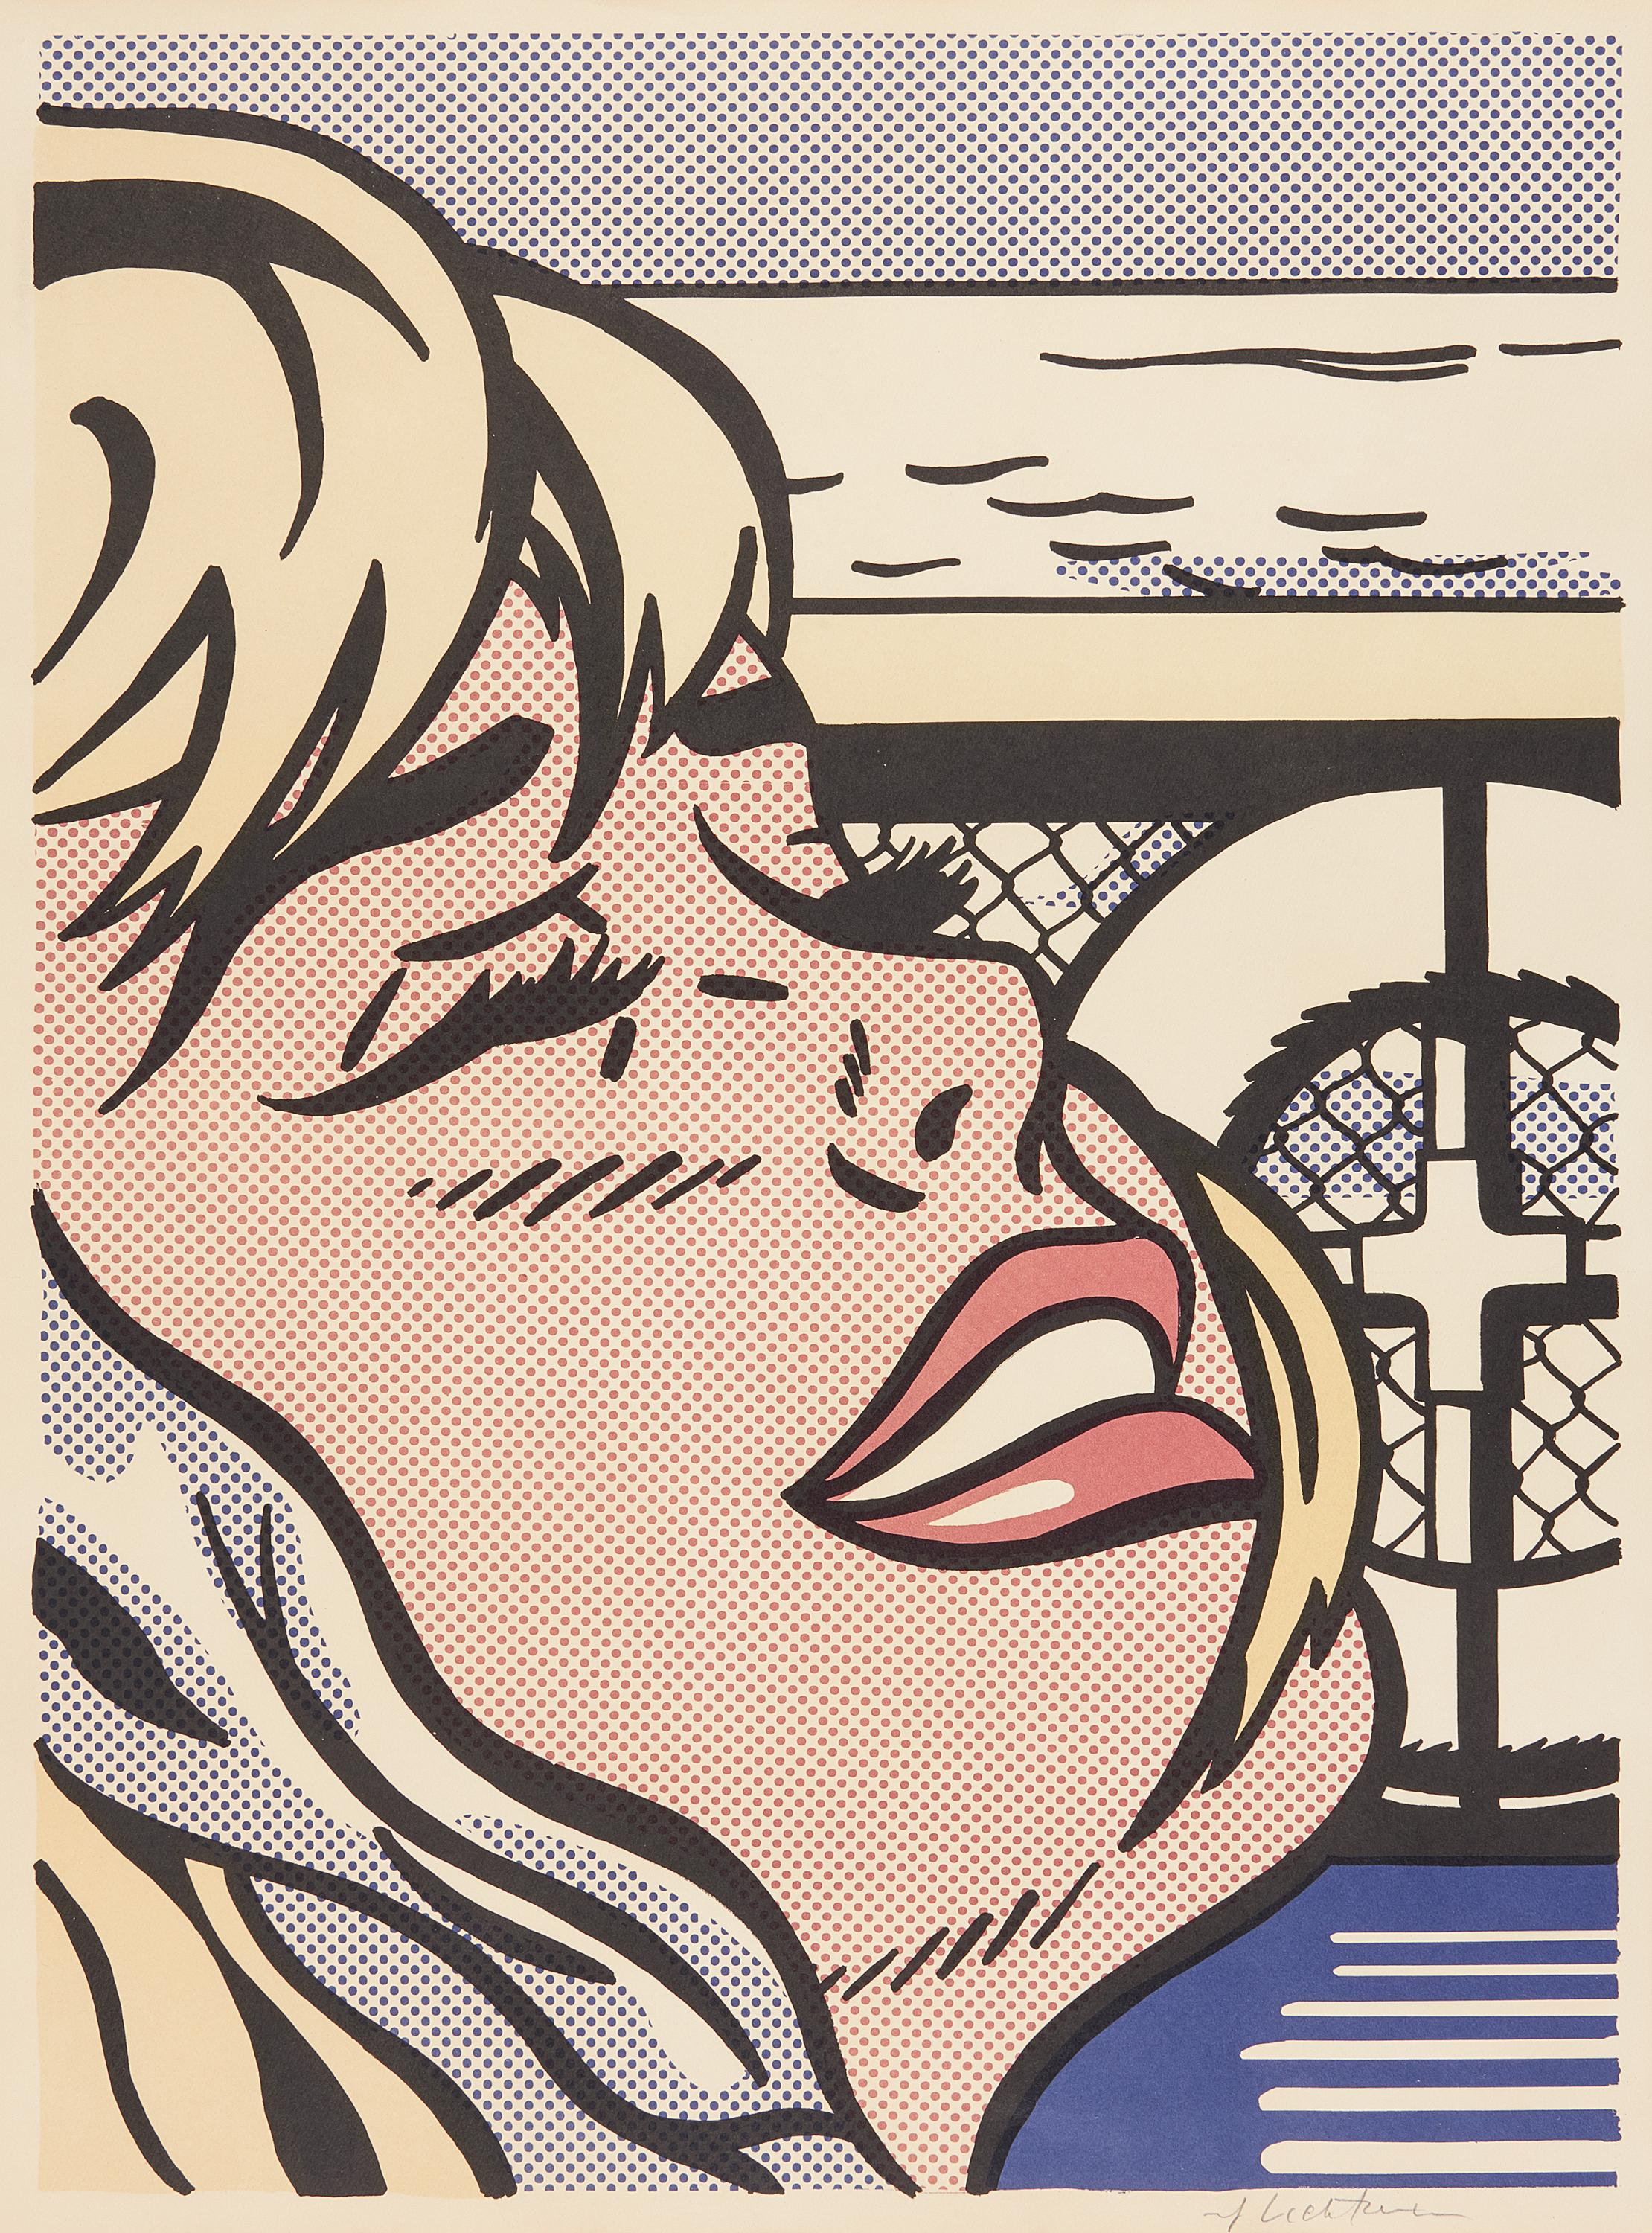 Roy Lichtenstein - Auktion 411 Los 190, 62718-1, Van Ham Kunstauktionen